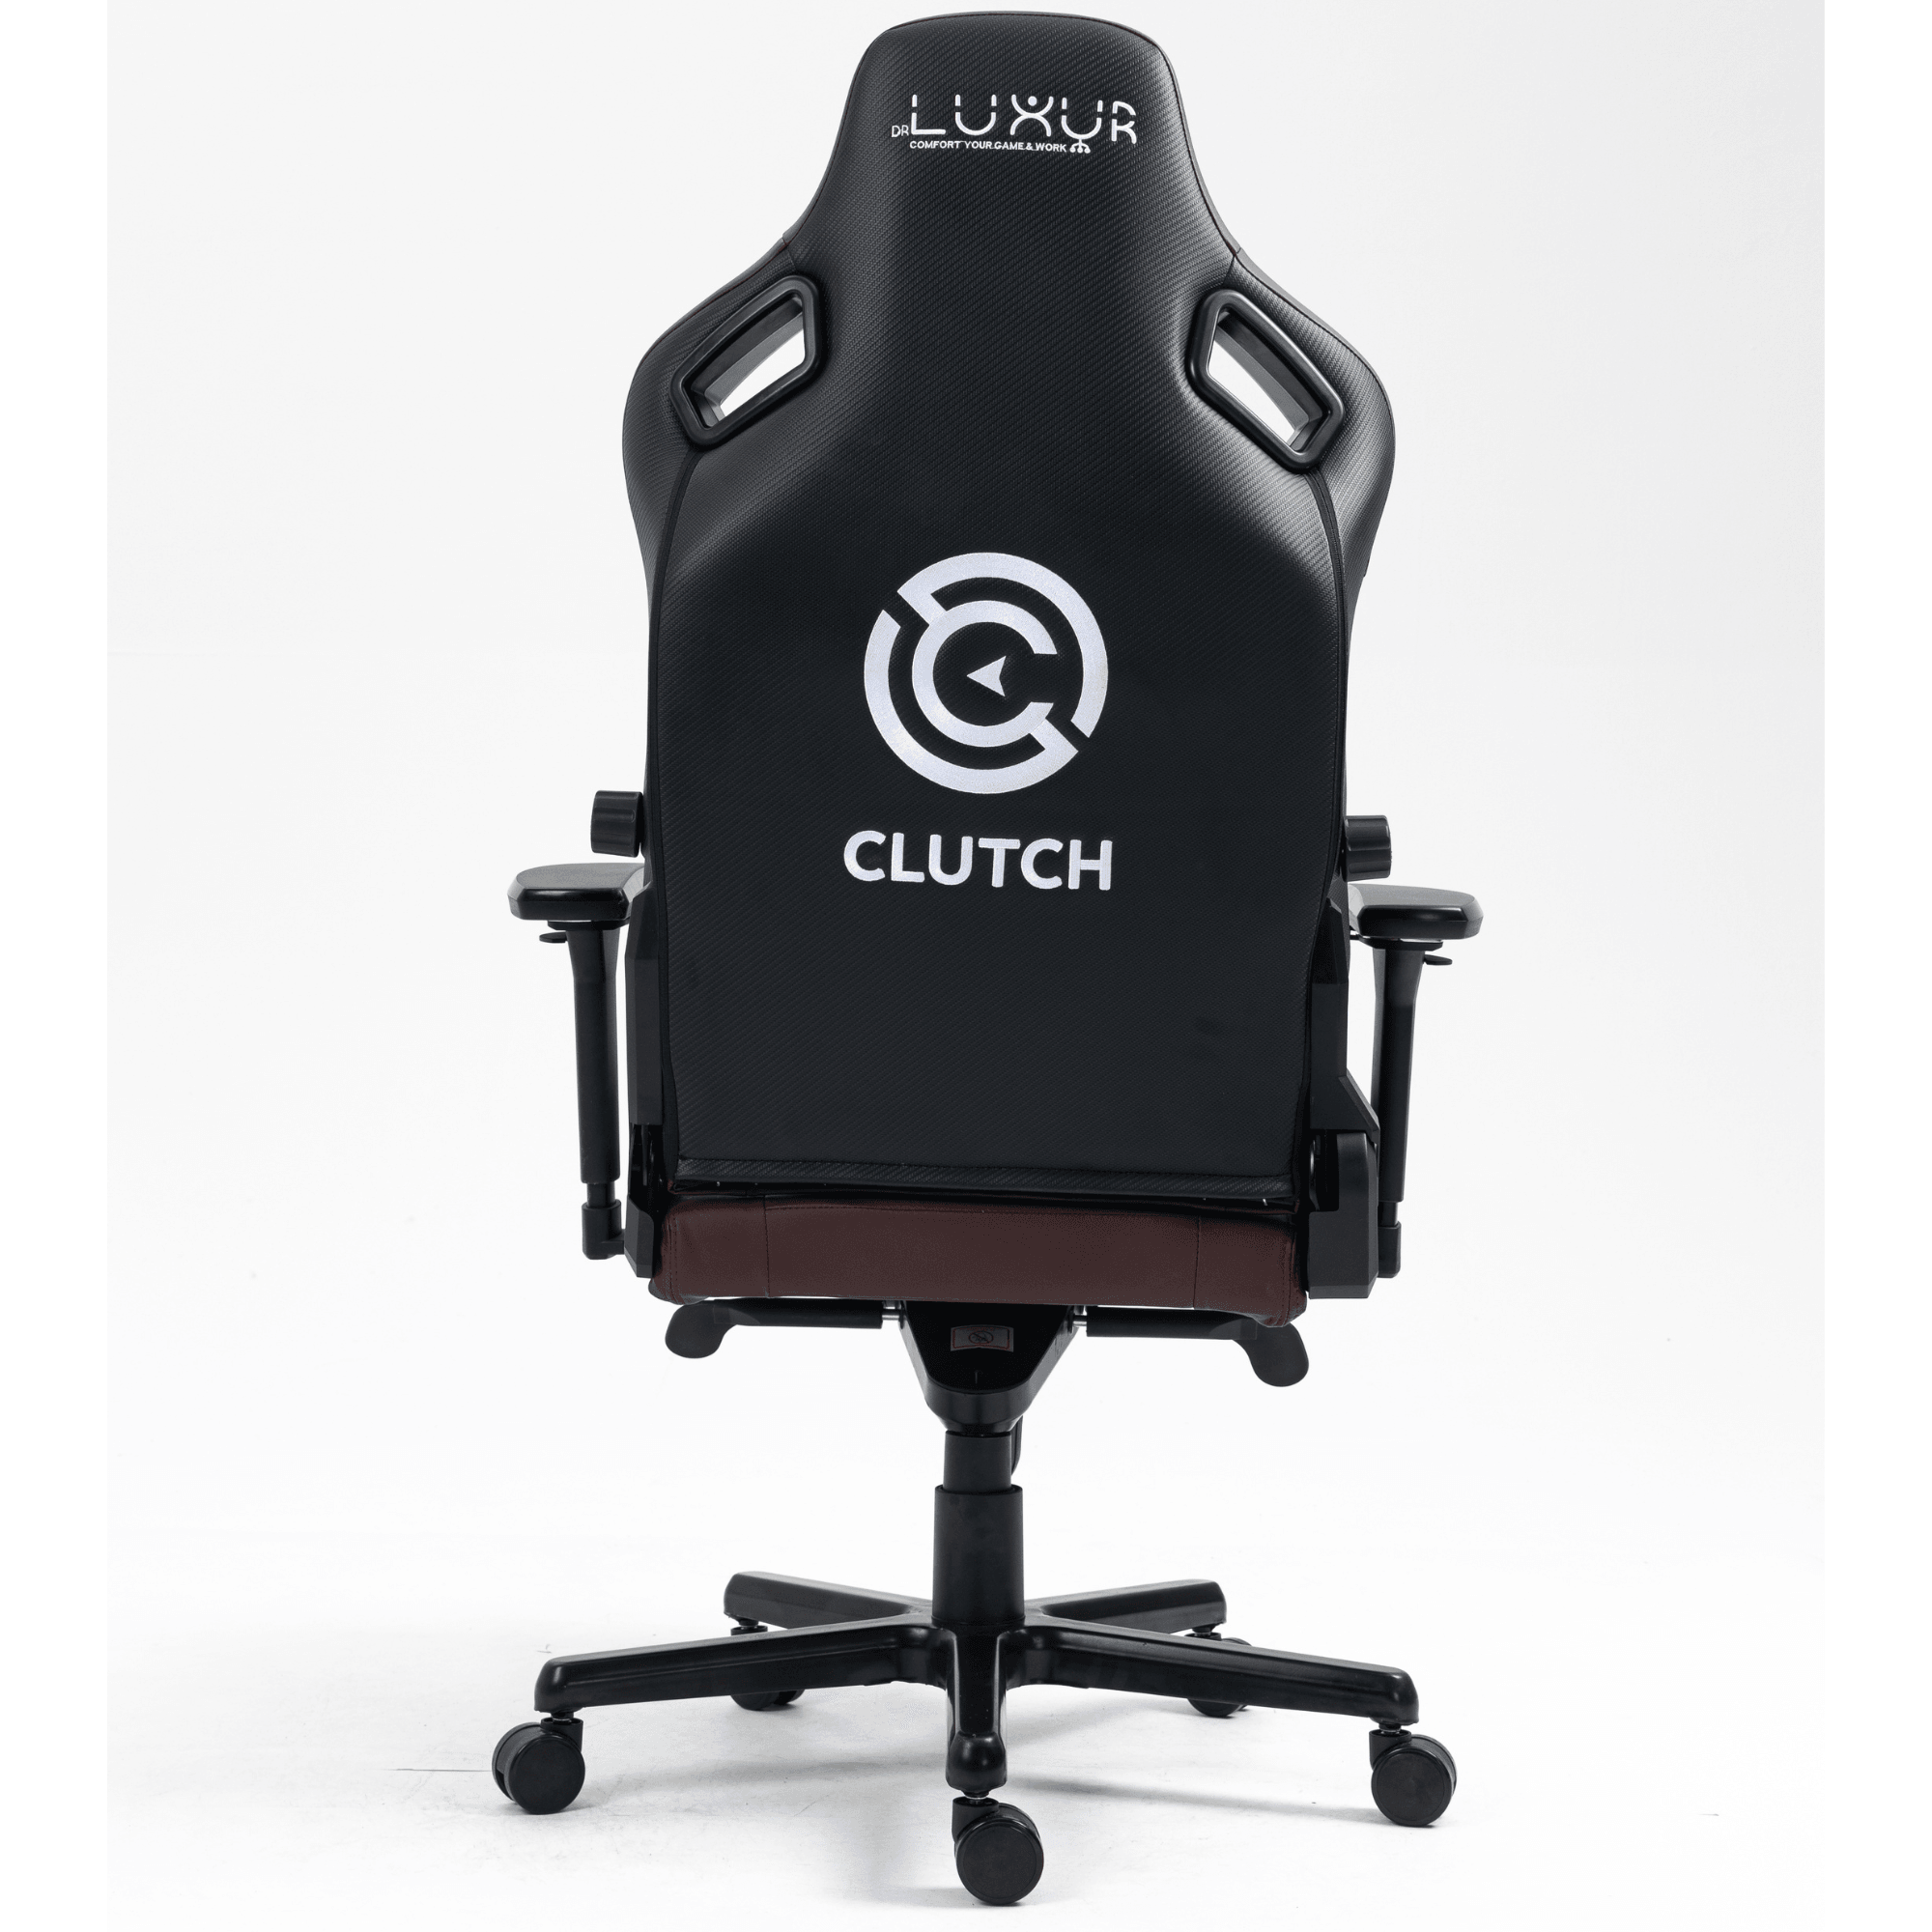 Drluxur CLUTCH Gaming chair - DrLuxur